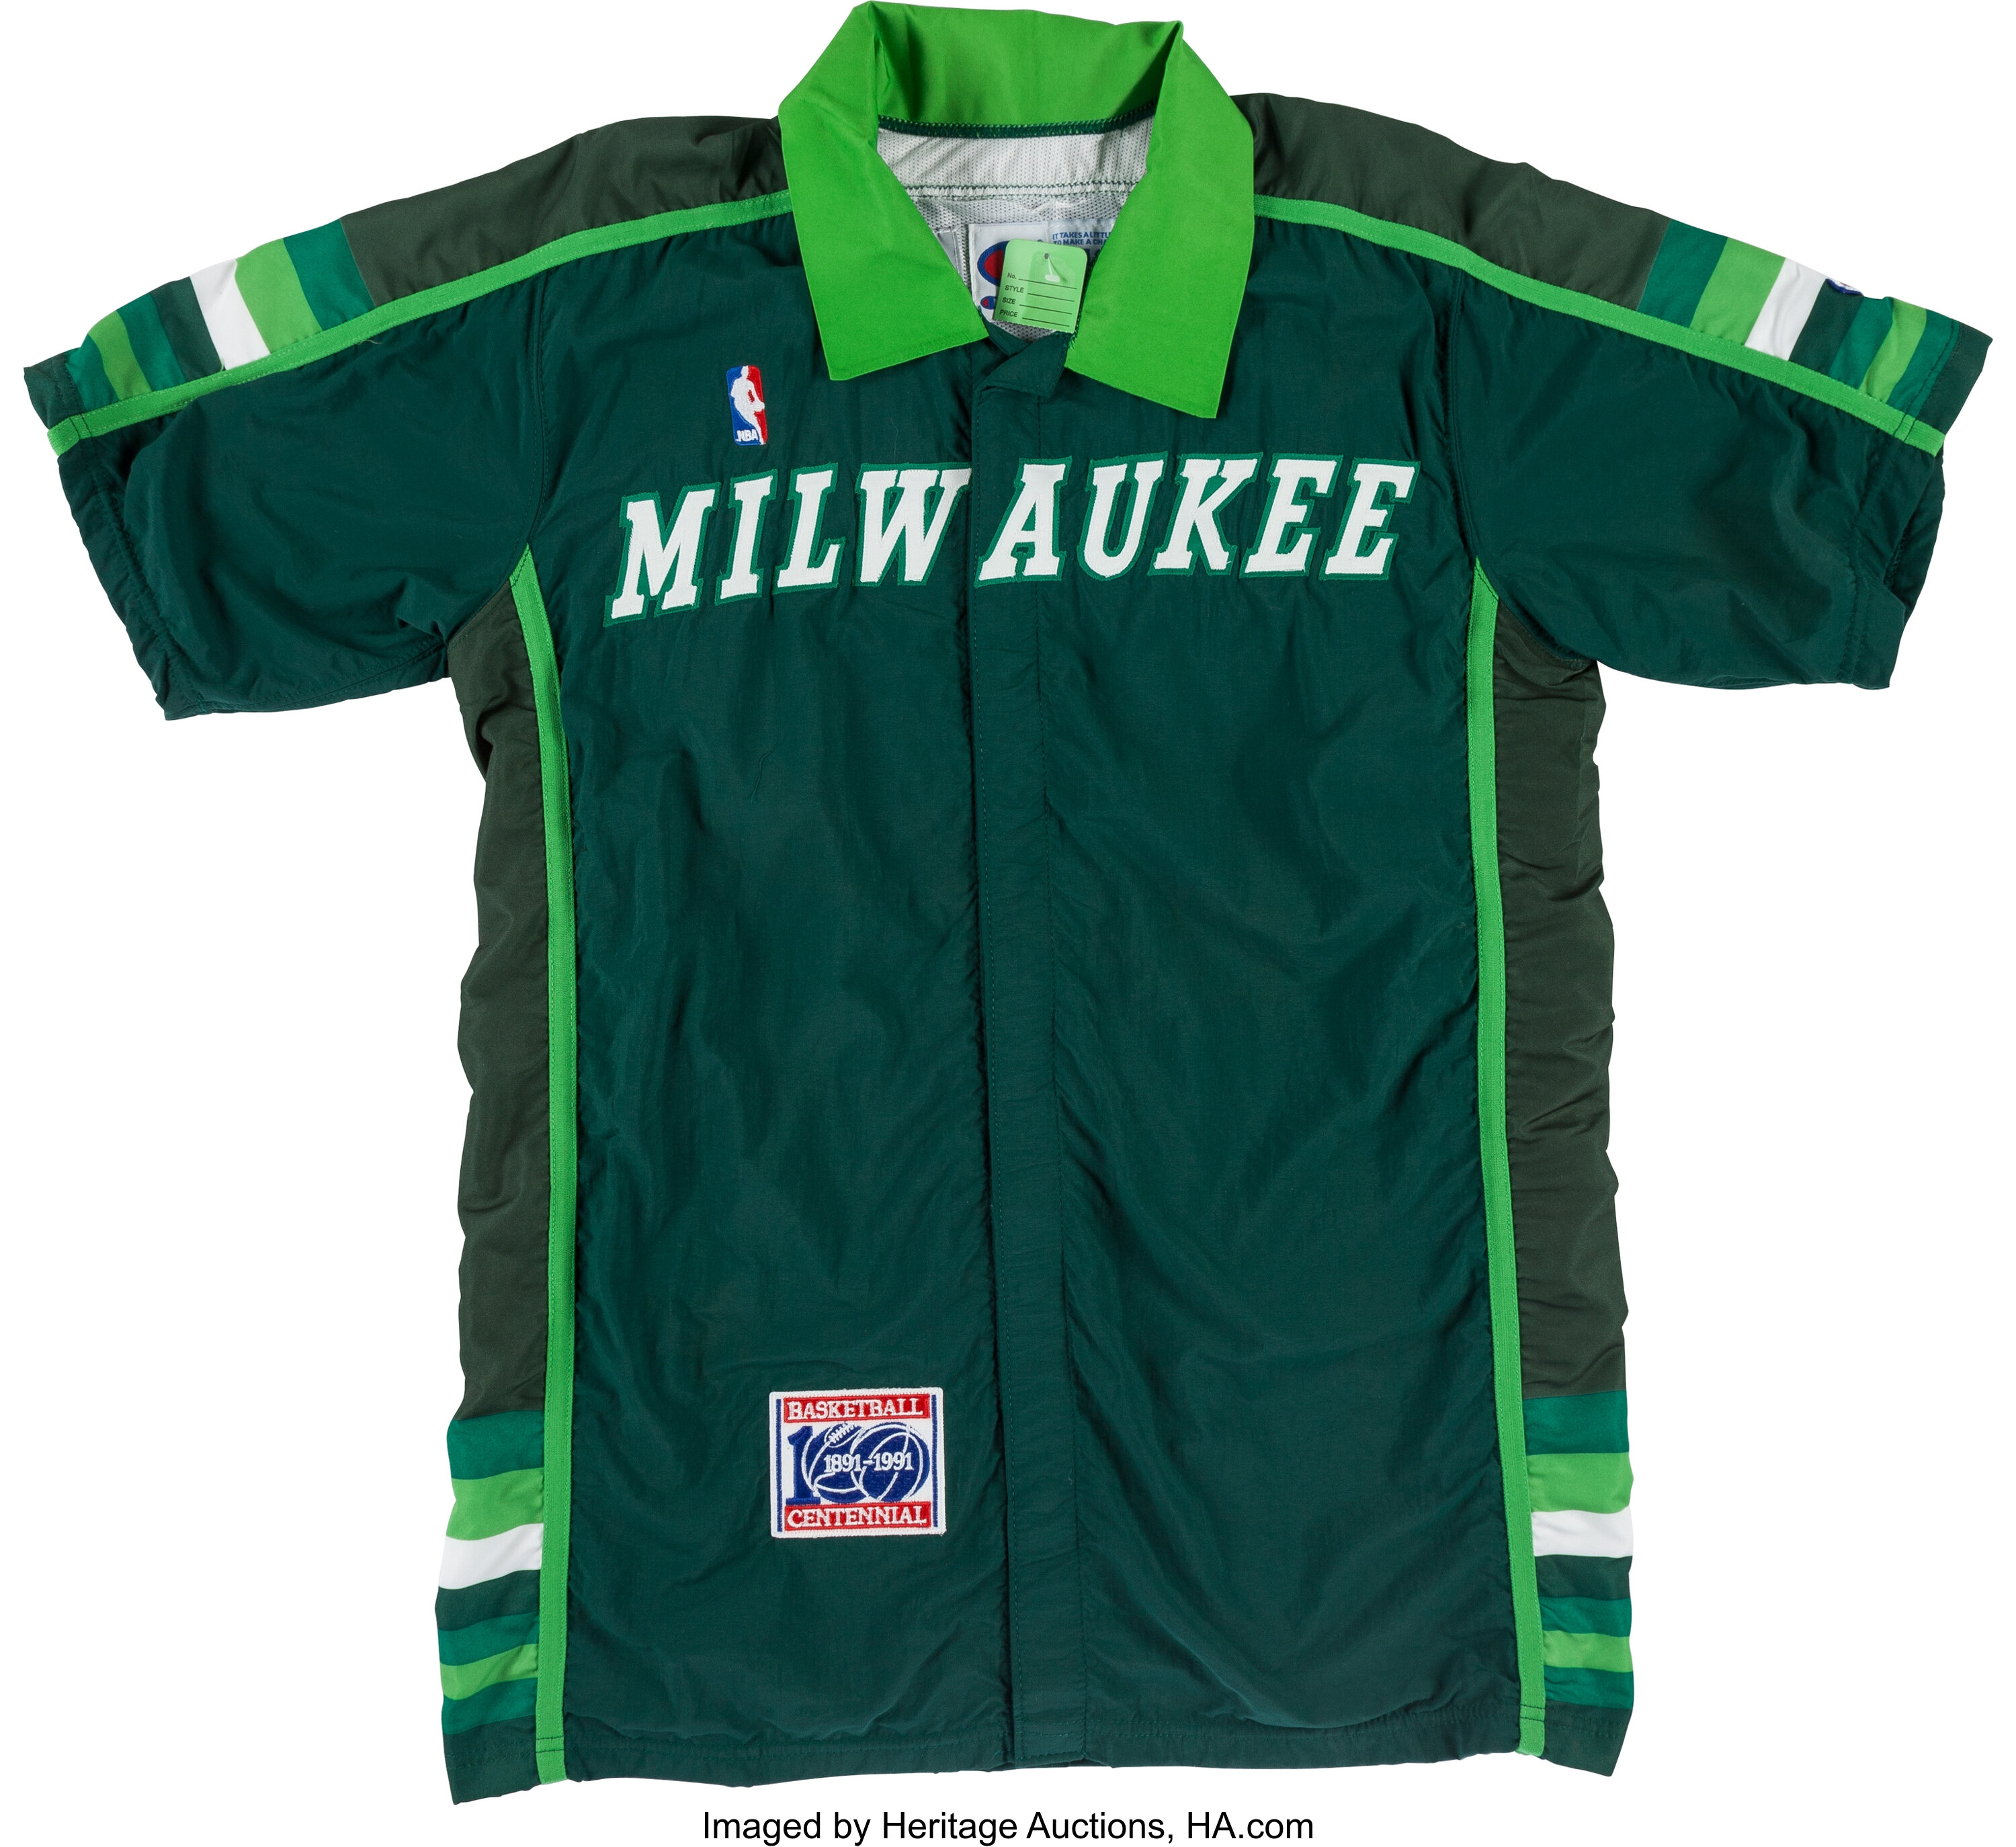 NBA Summer League: Milwaukee Bucks Fall to Brooklyn Nets, 91-97 - Brew Hoop